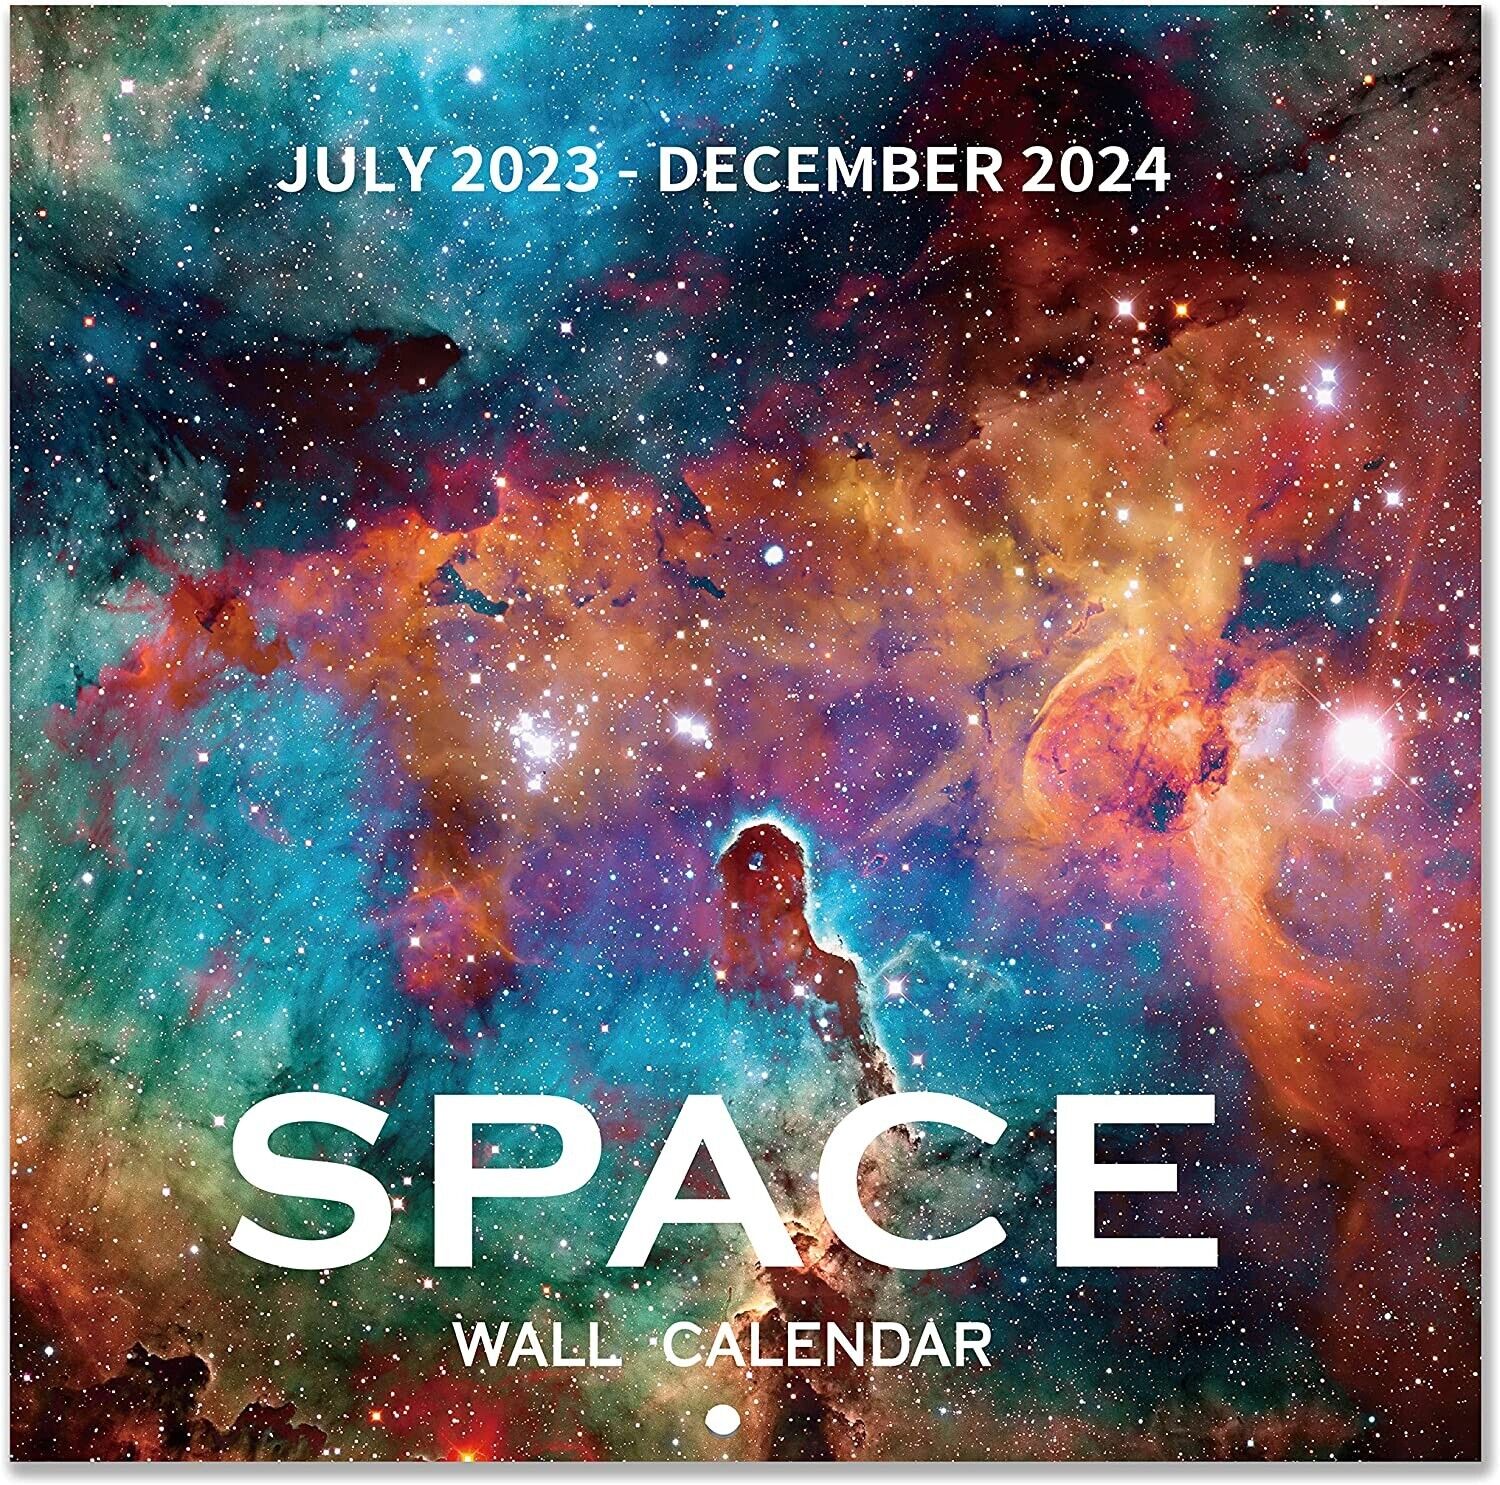 Wall Calendar 2023-2024 - 18 Monthly 2023-2024 Wall Calendar July 2023 - Dec2024